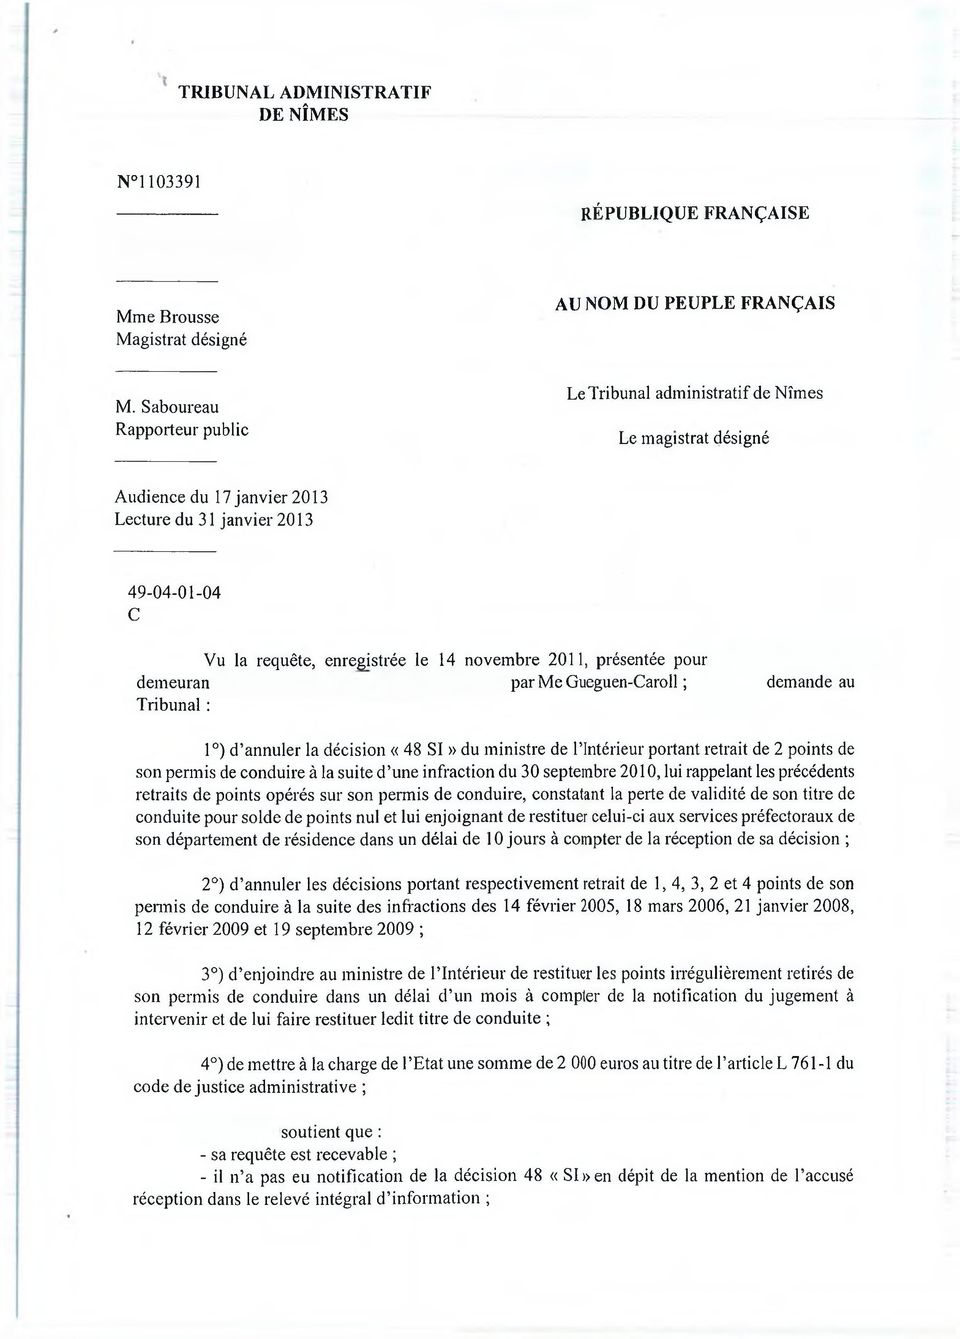 enregistrée le 14 novembre 2011, présentée pour demeuran par Me Gueguen-Caroll ; demande au Tribunal : 1 ) d annuler la décision «48 SI» du ministre de l intérieur portant retrait de 2 points de son